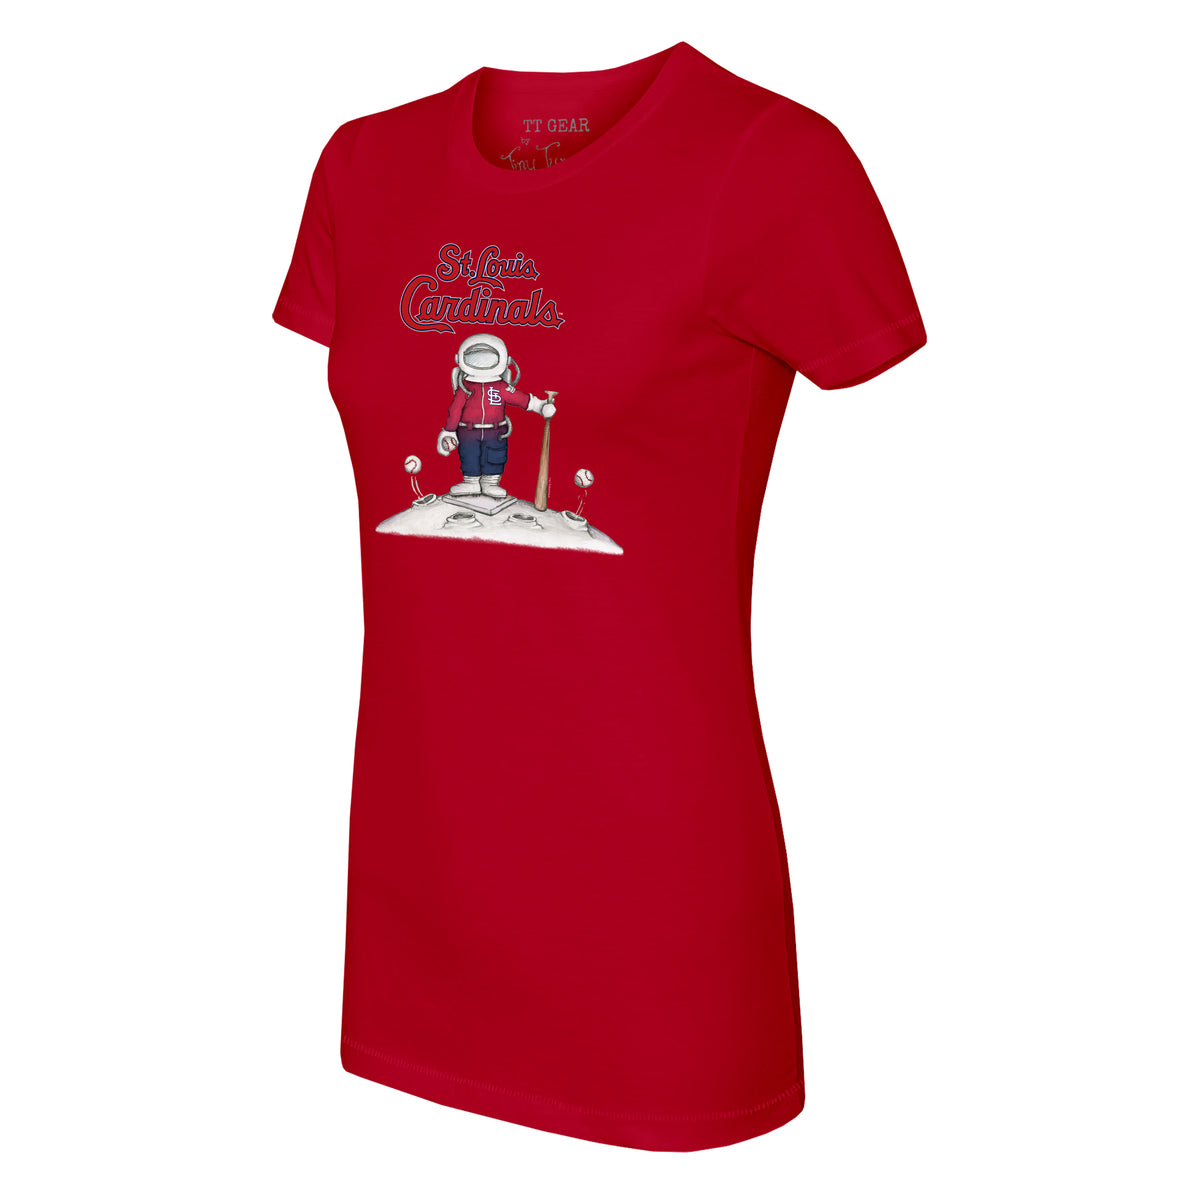 St. Louis Cardinals Astronaut Tee Shirt